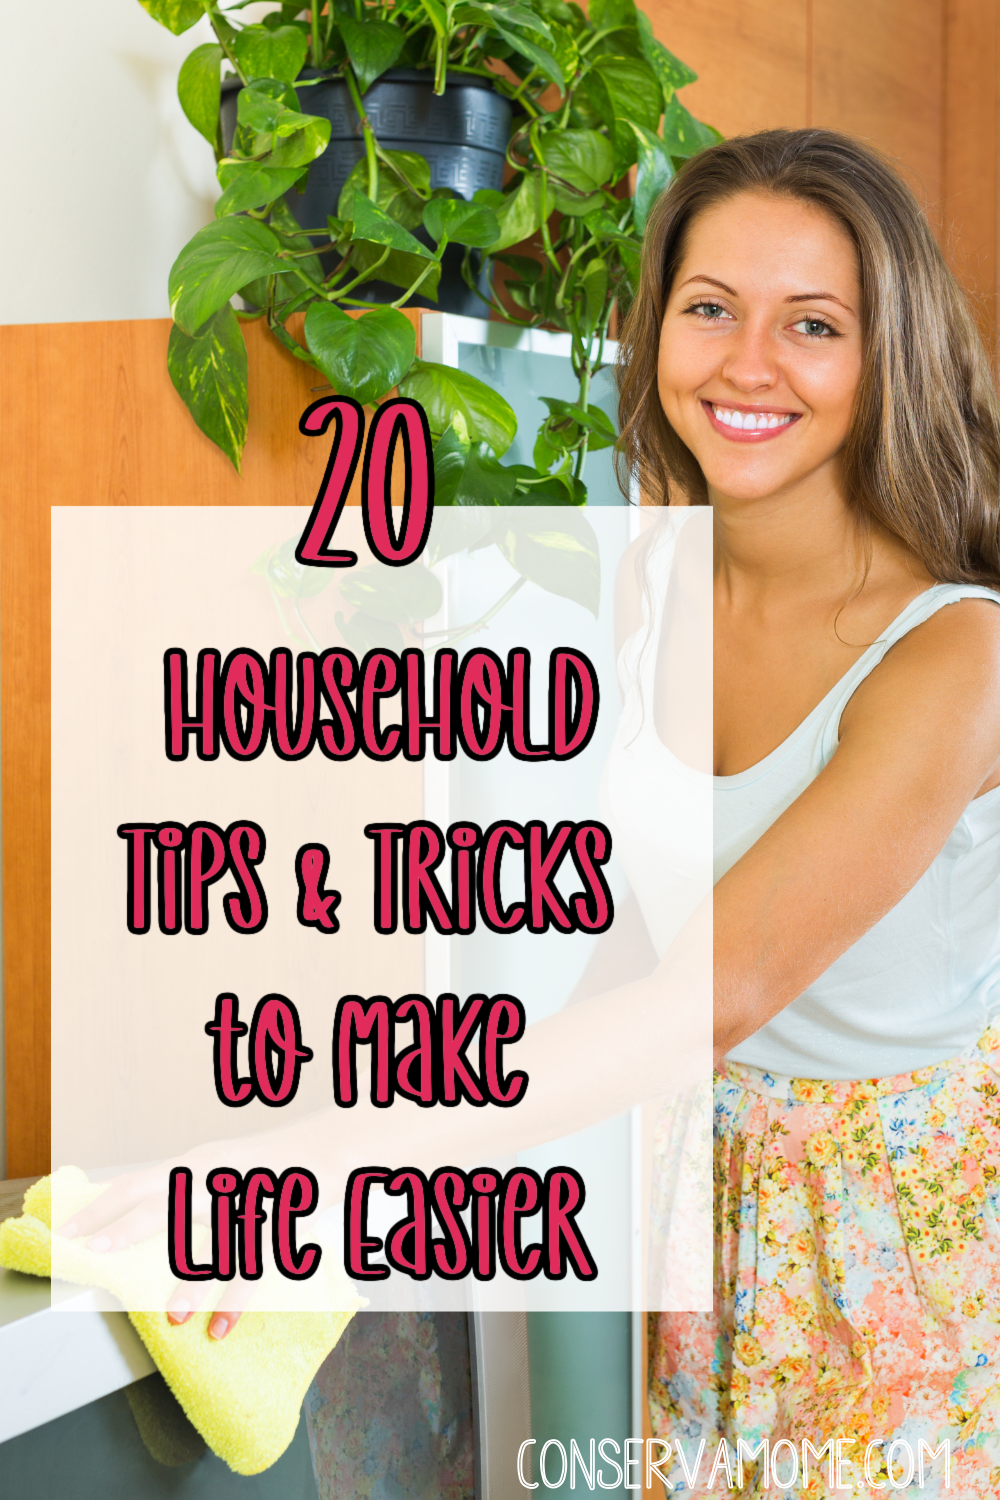 20 Household tips & tricks to make life easier